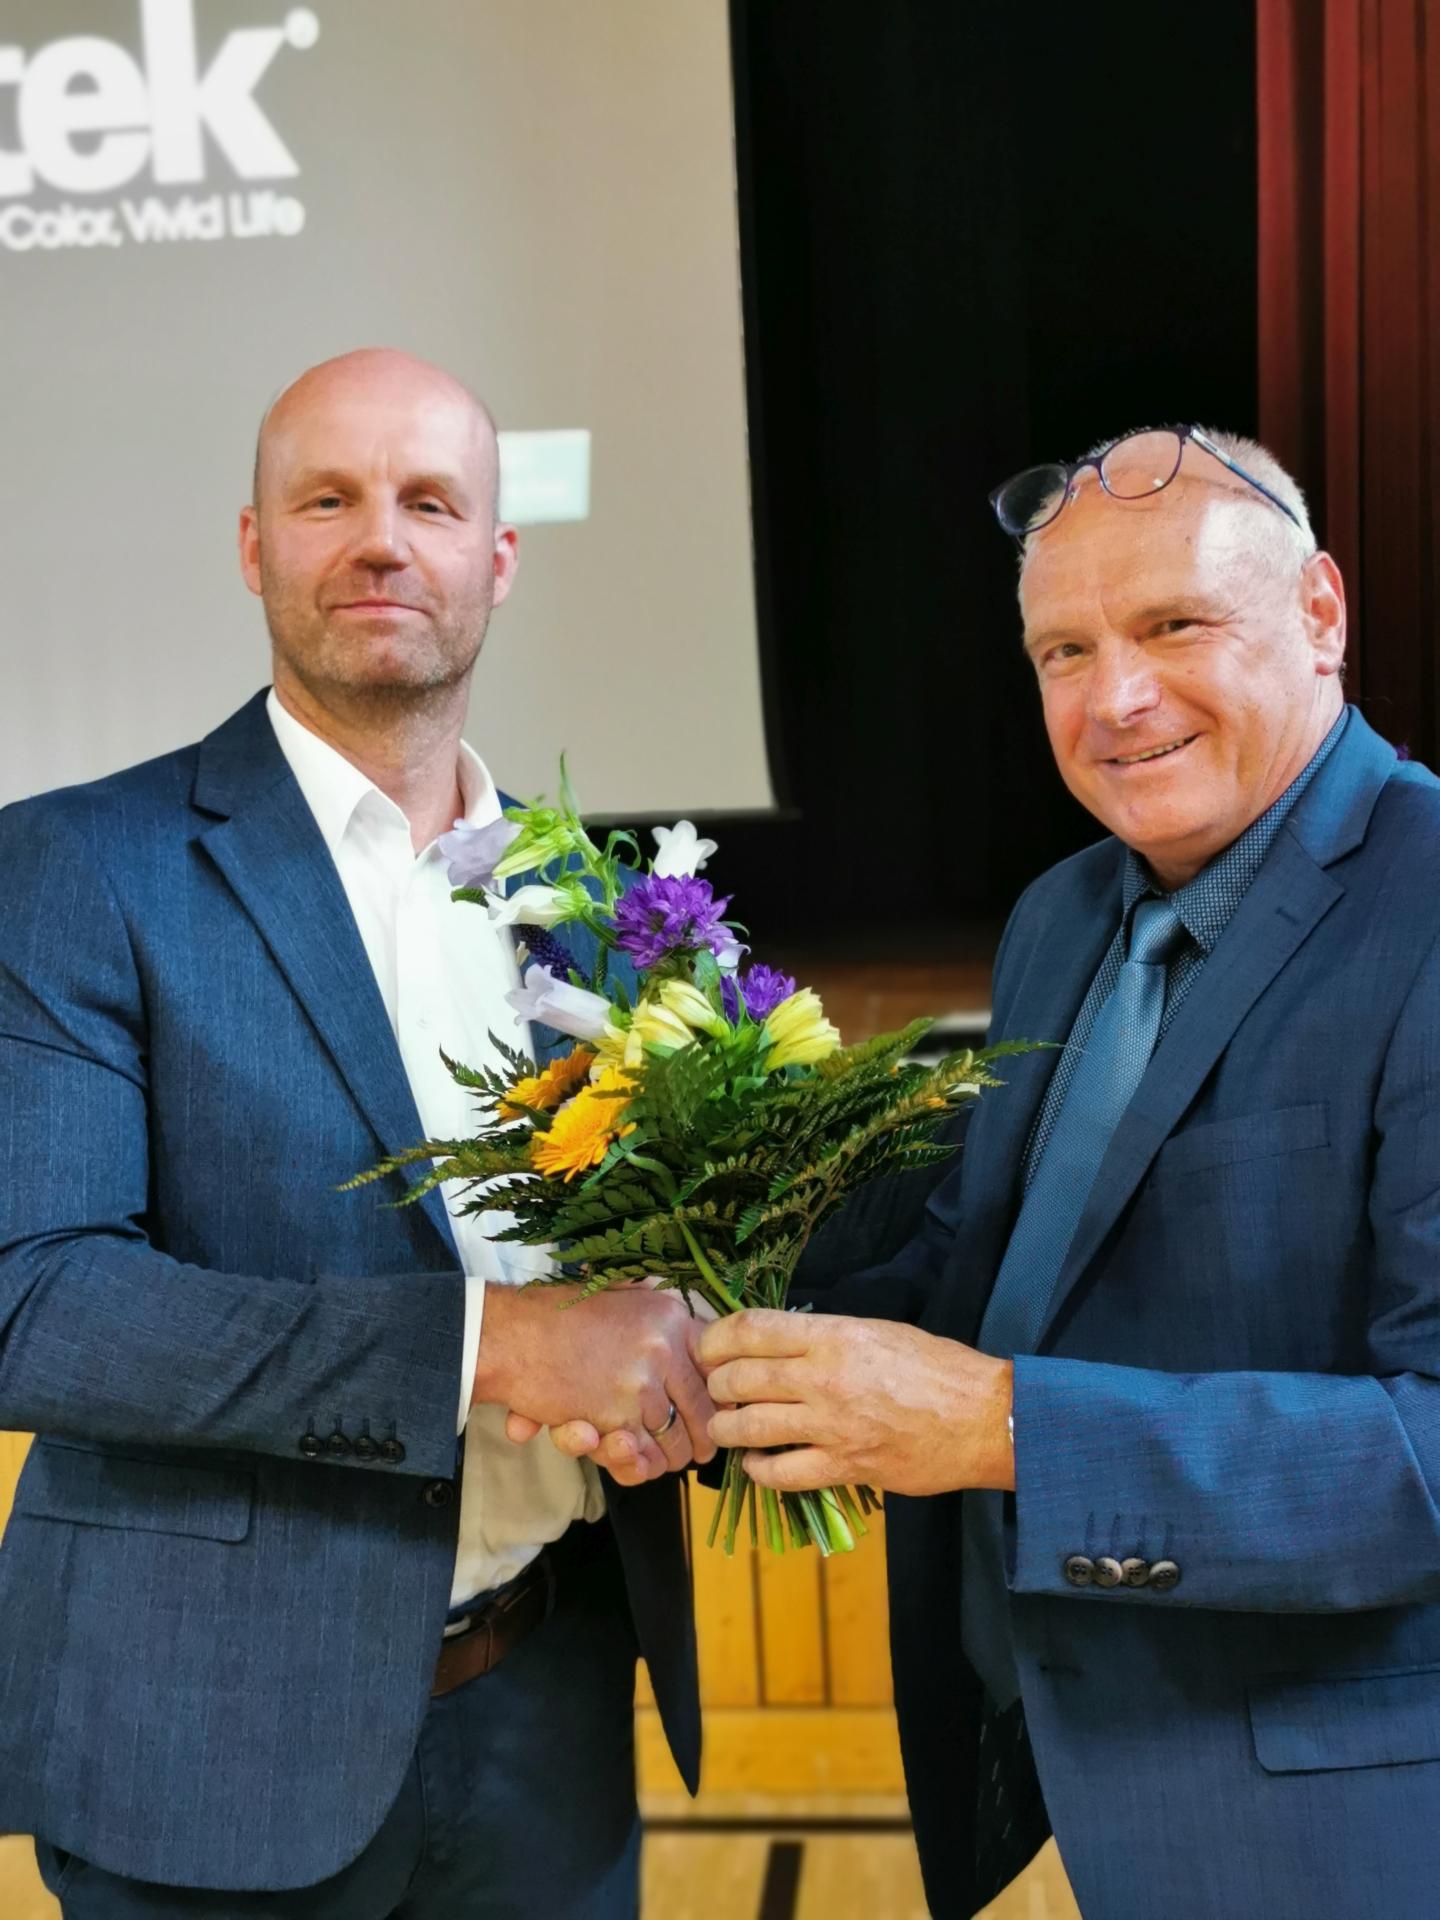 Der neue Bürgermeister heißt ab 1. Juli Marco Babenz (links). Er wurde von Knut Jende im Amt begrüßt.